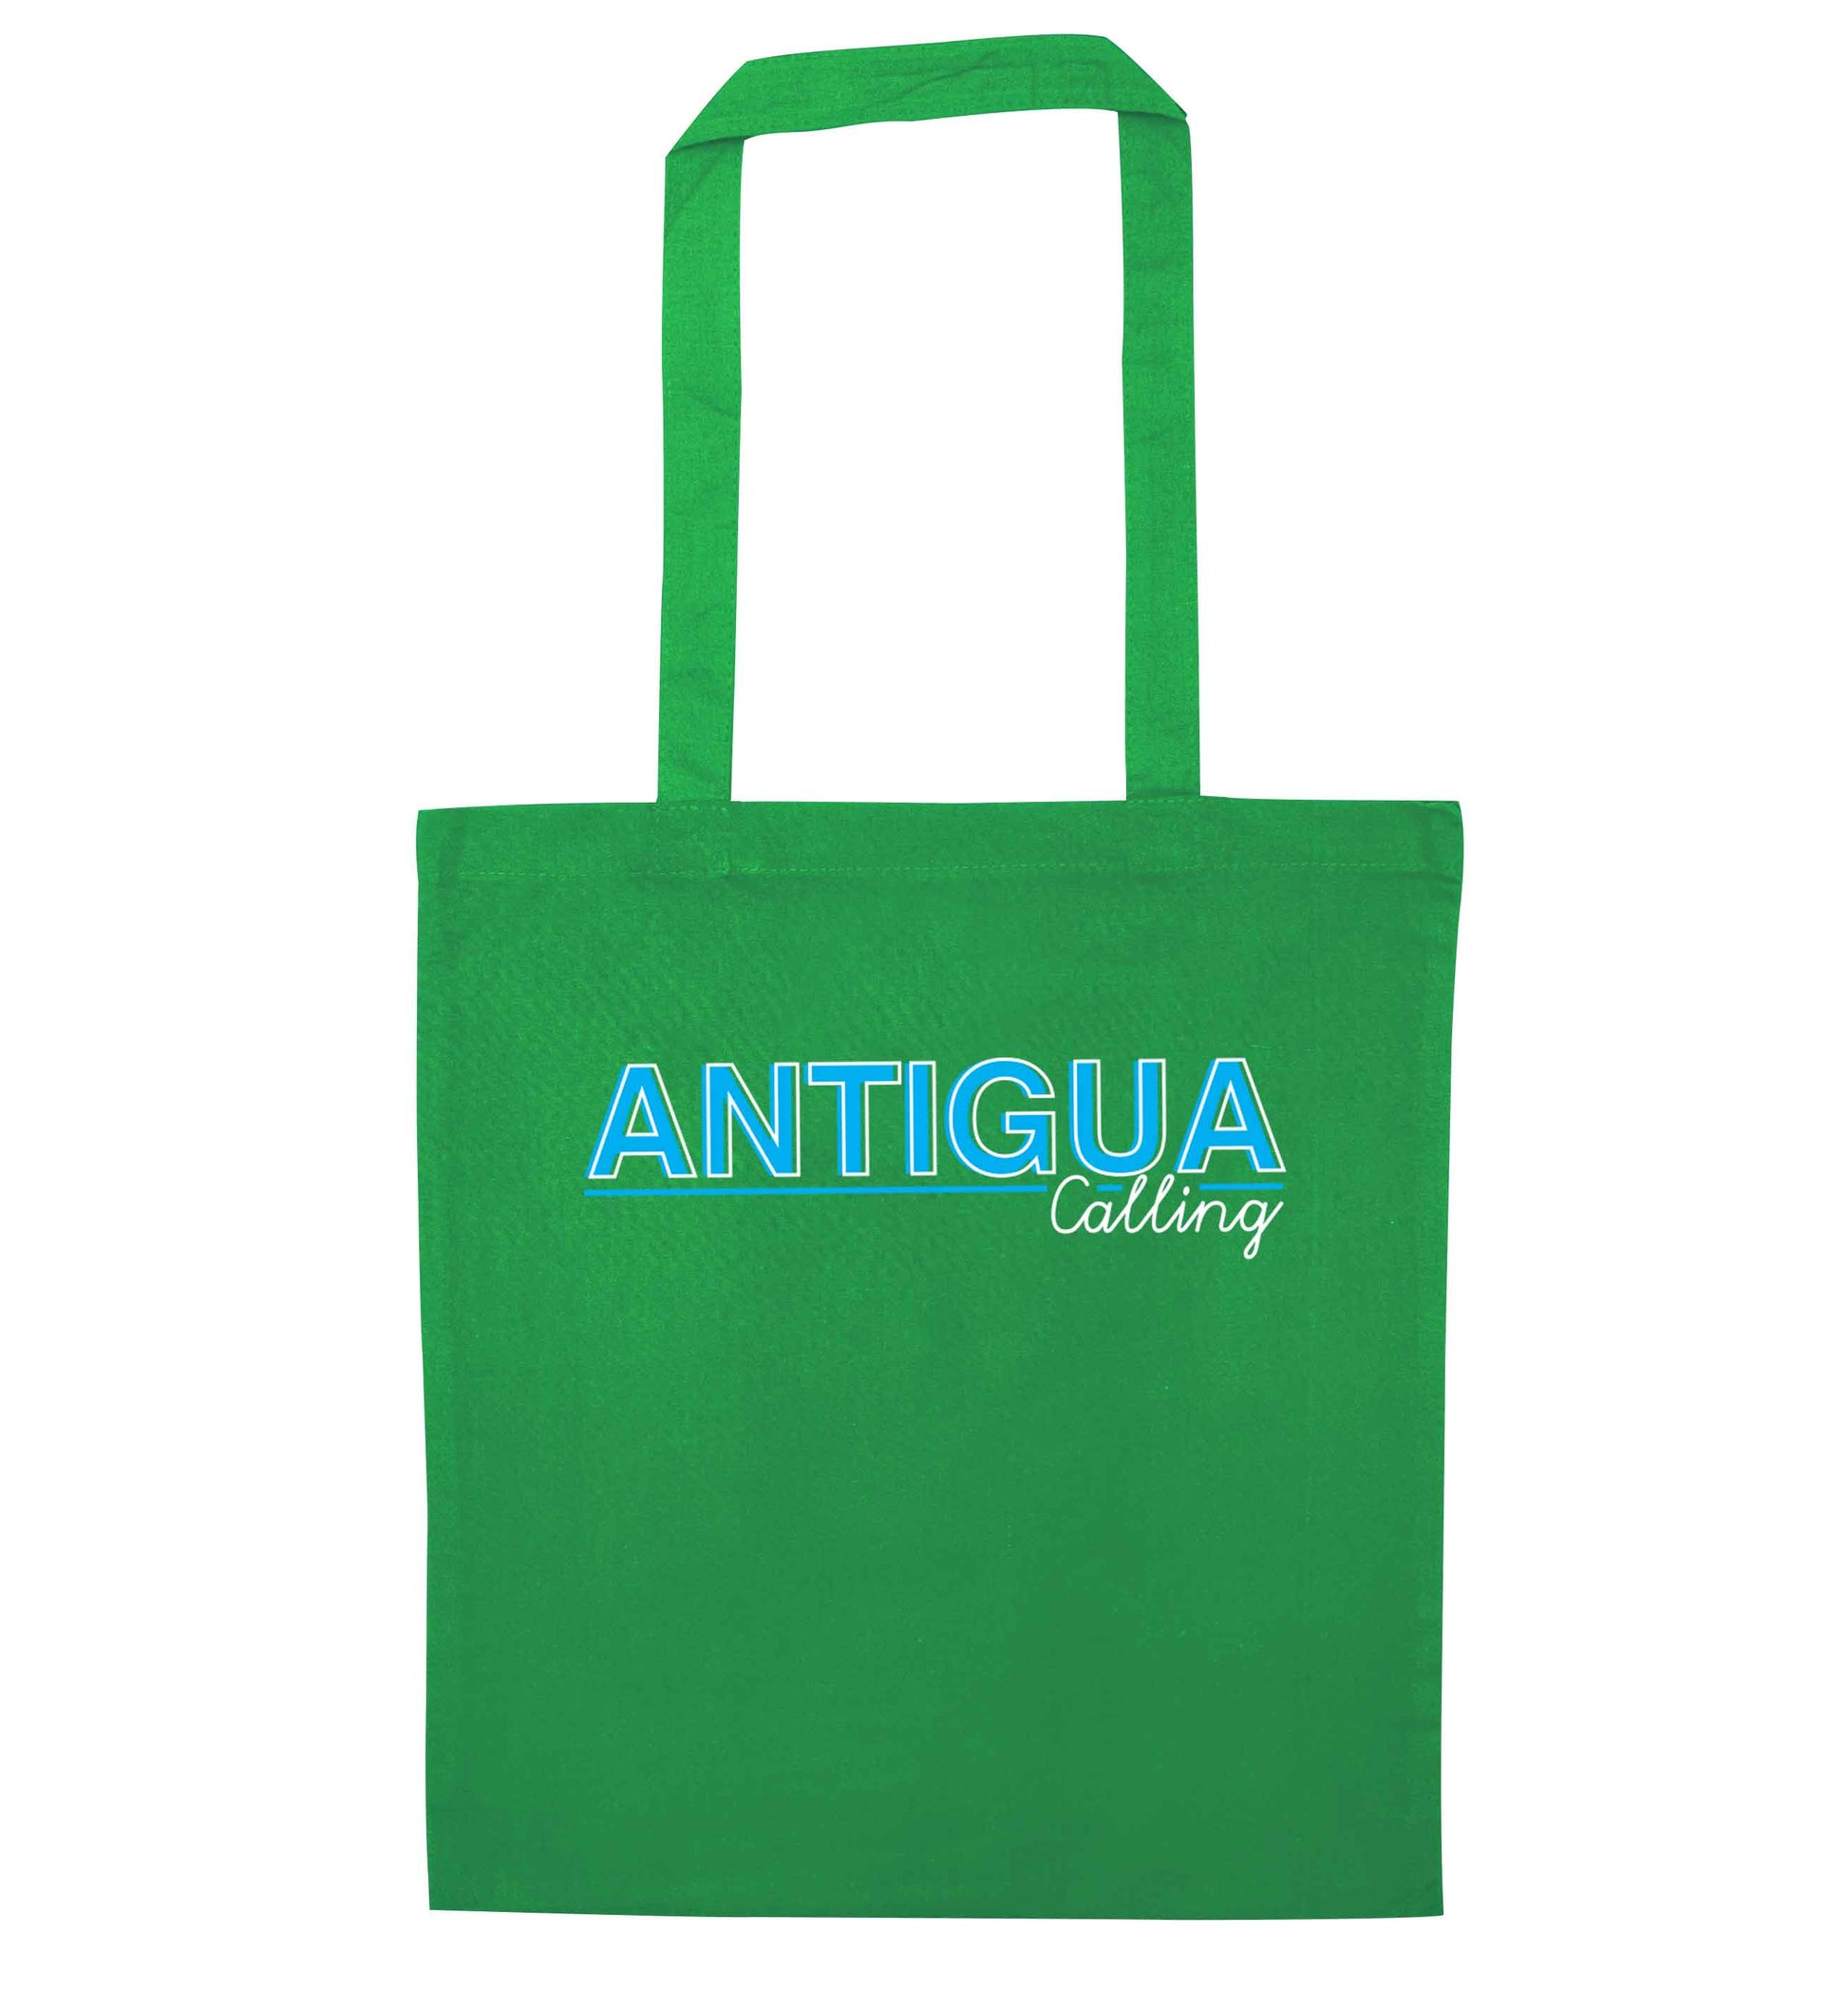 Antigua calling green tote bag